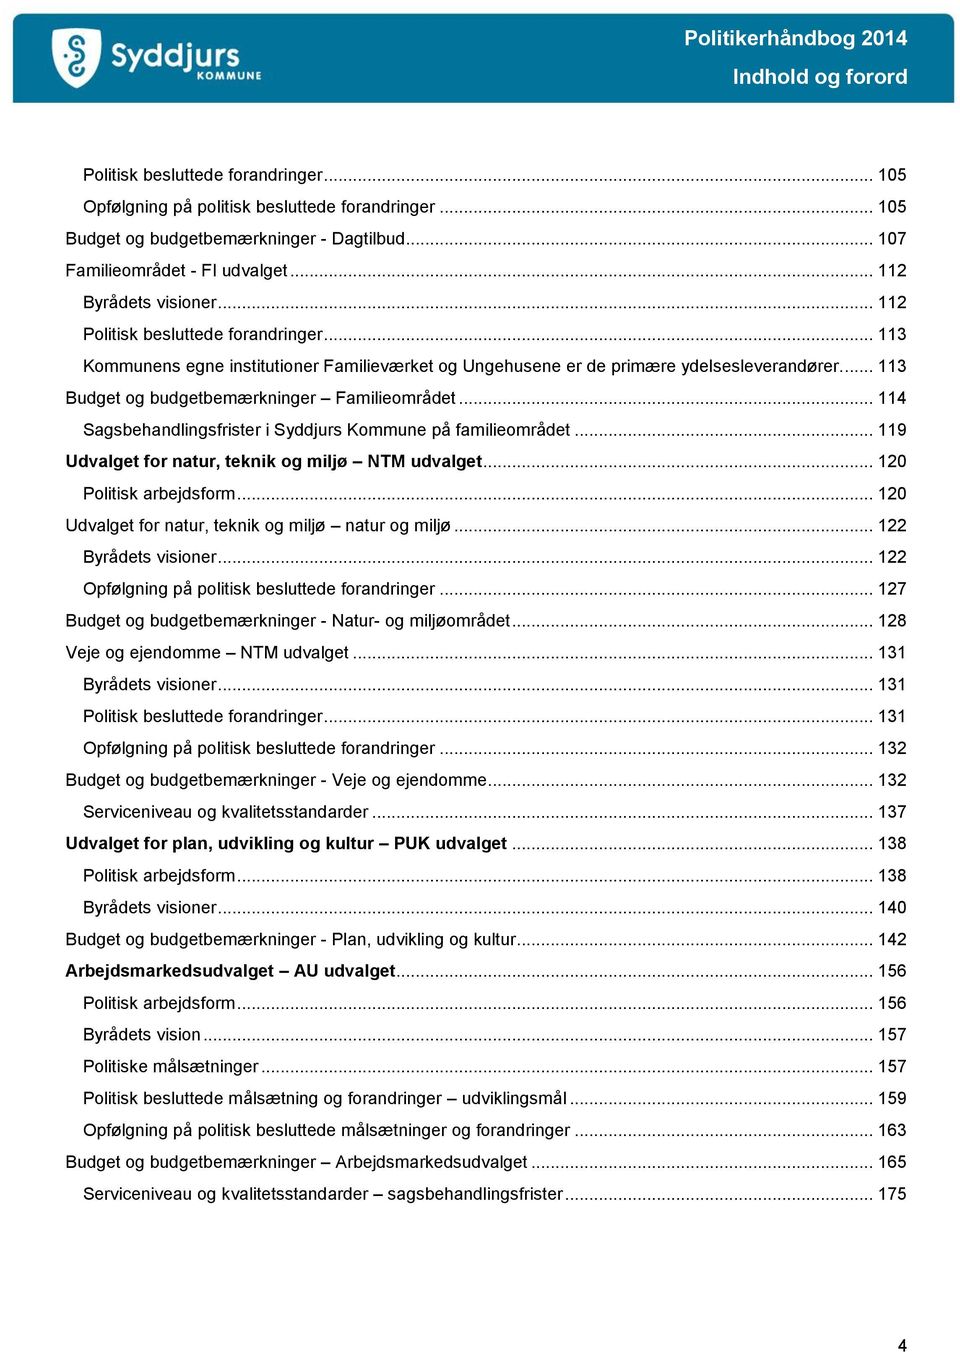 .. 113 Budget og budgetbemærkninger Familieområdet... 114 Sagsbehandlingsfrister i Syddjurs Kommune på familieområdet... 119 Udvalget for natur, teknik og miljø NTM udvalget... 120 Politisk arbejdsform.